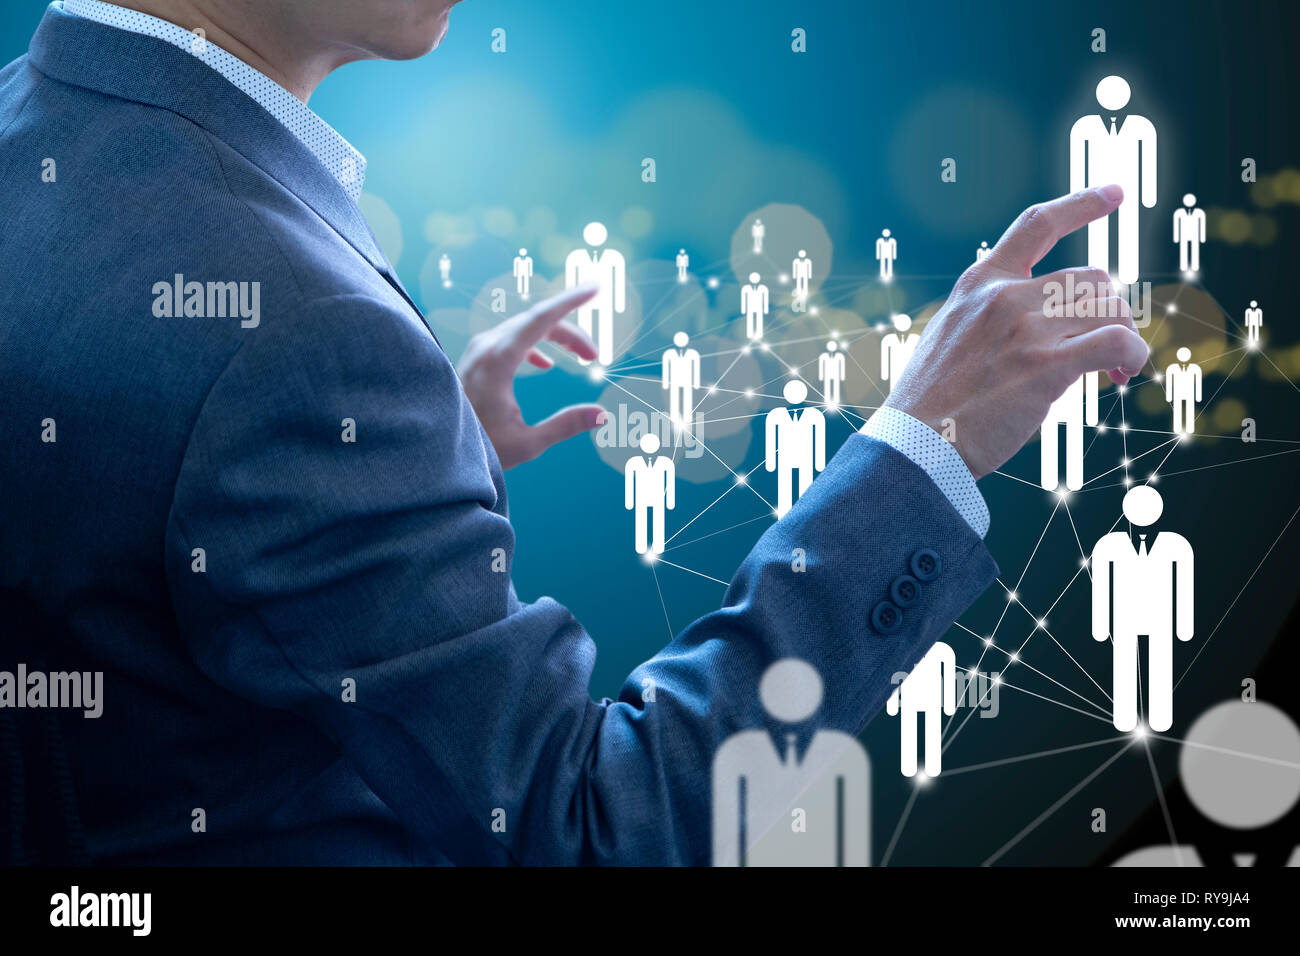 Business Administrator in Aktion von Manpower oder Human Resource Planning oder Business Organisation auf einem virtuellen Dashboard. Stockfoto